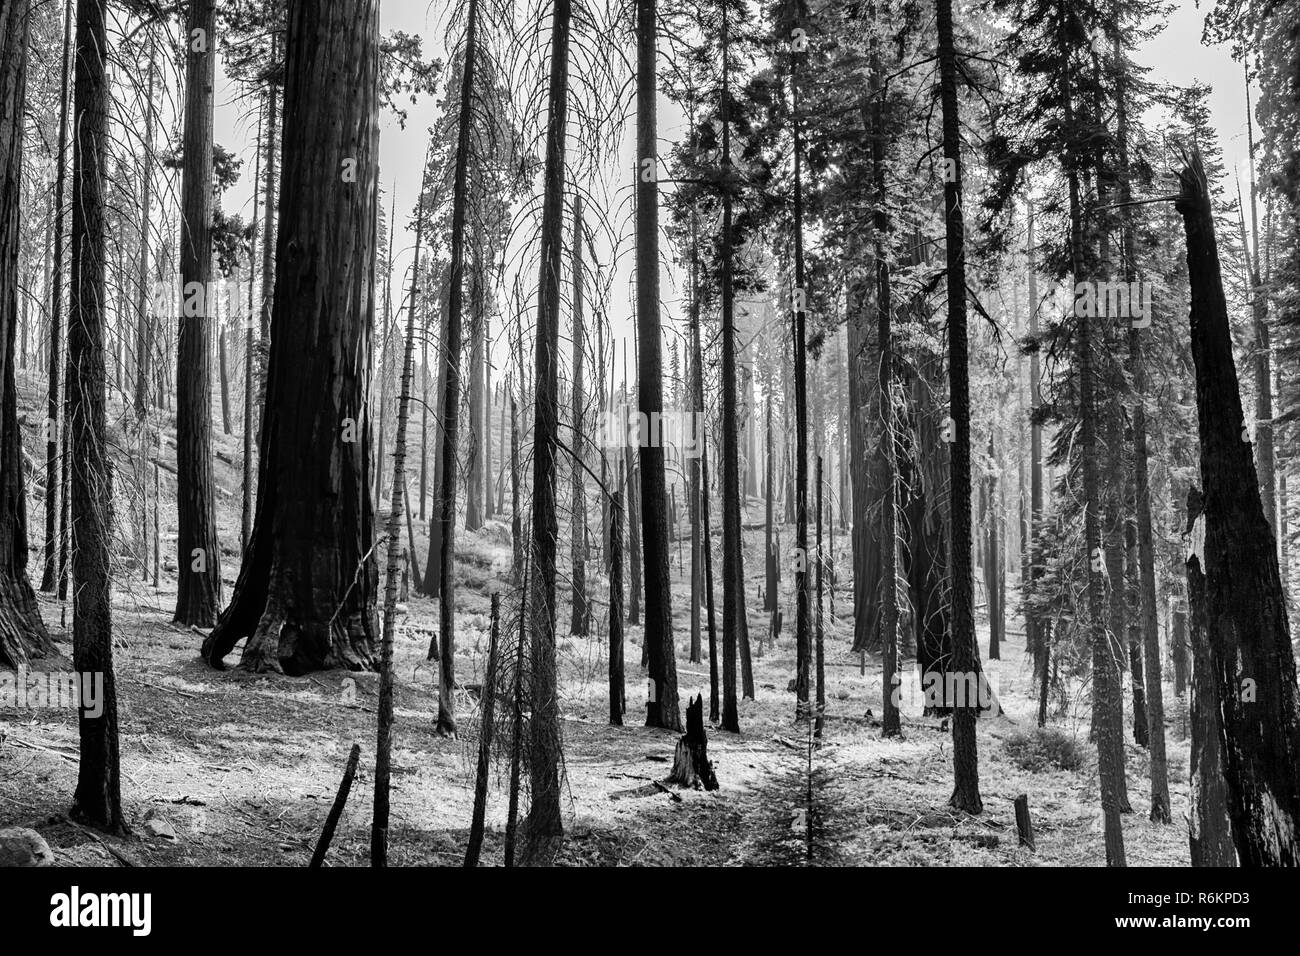 Verbrannt Forest Grove in der kalifornischen Sierra Nevada. Stehen die schwarzen Stämme von Kiefer und gigantischen Sequoia Redwood Bäume in Schwarz und Weiß. Stockfoto